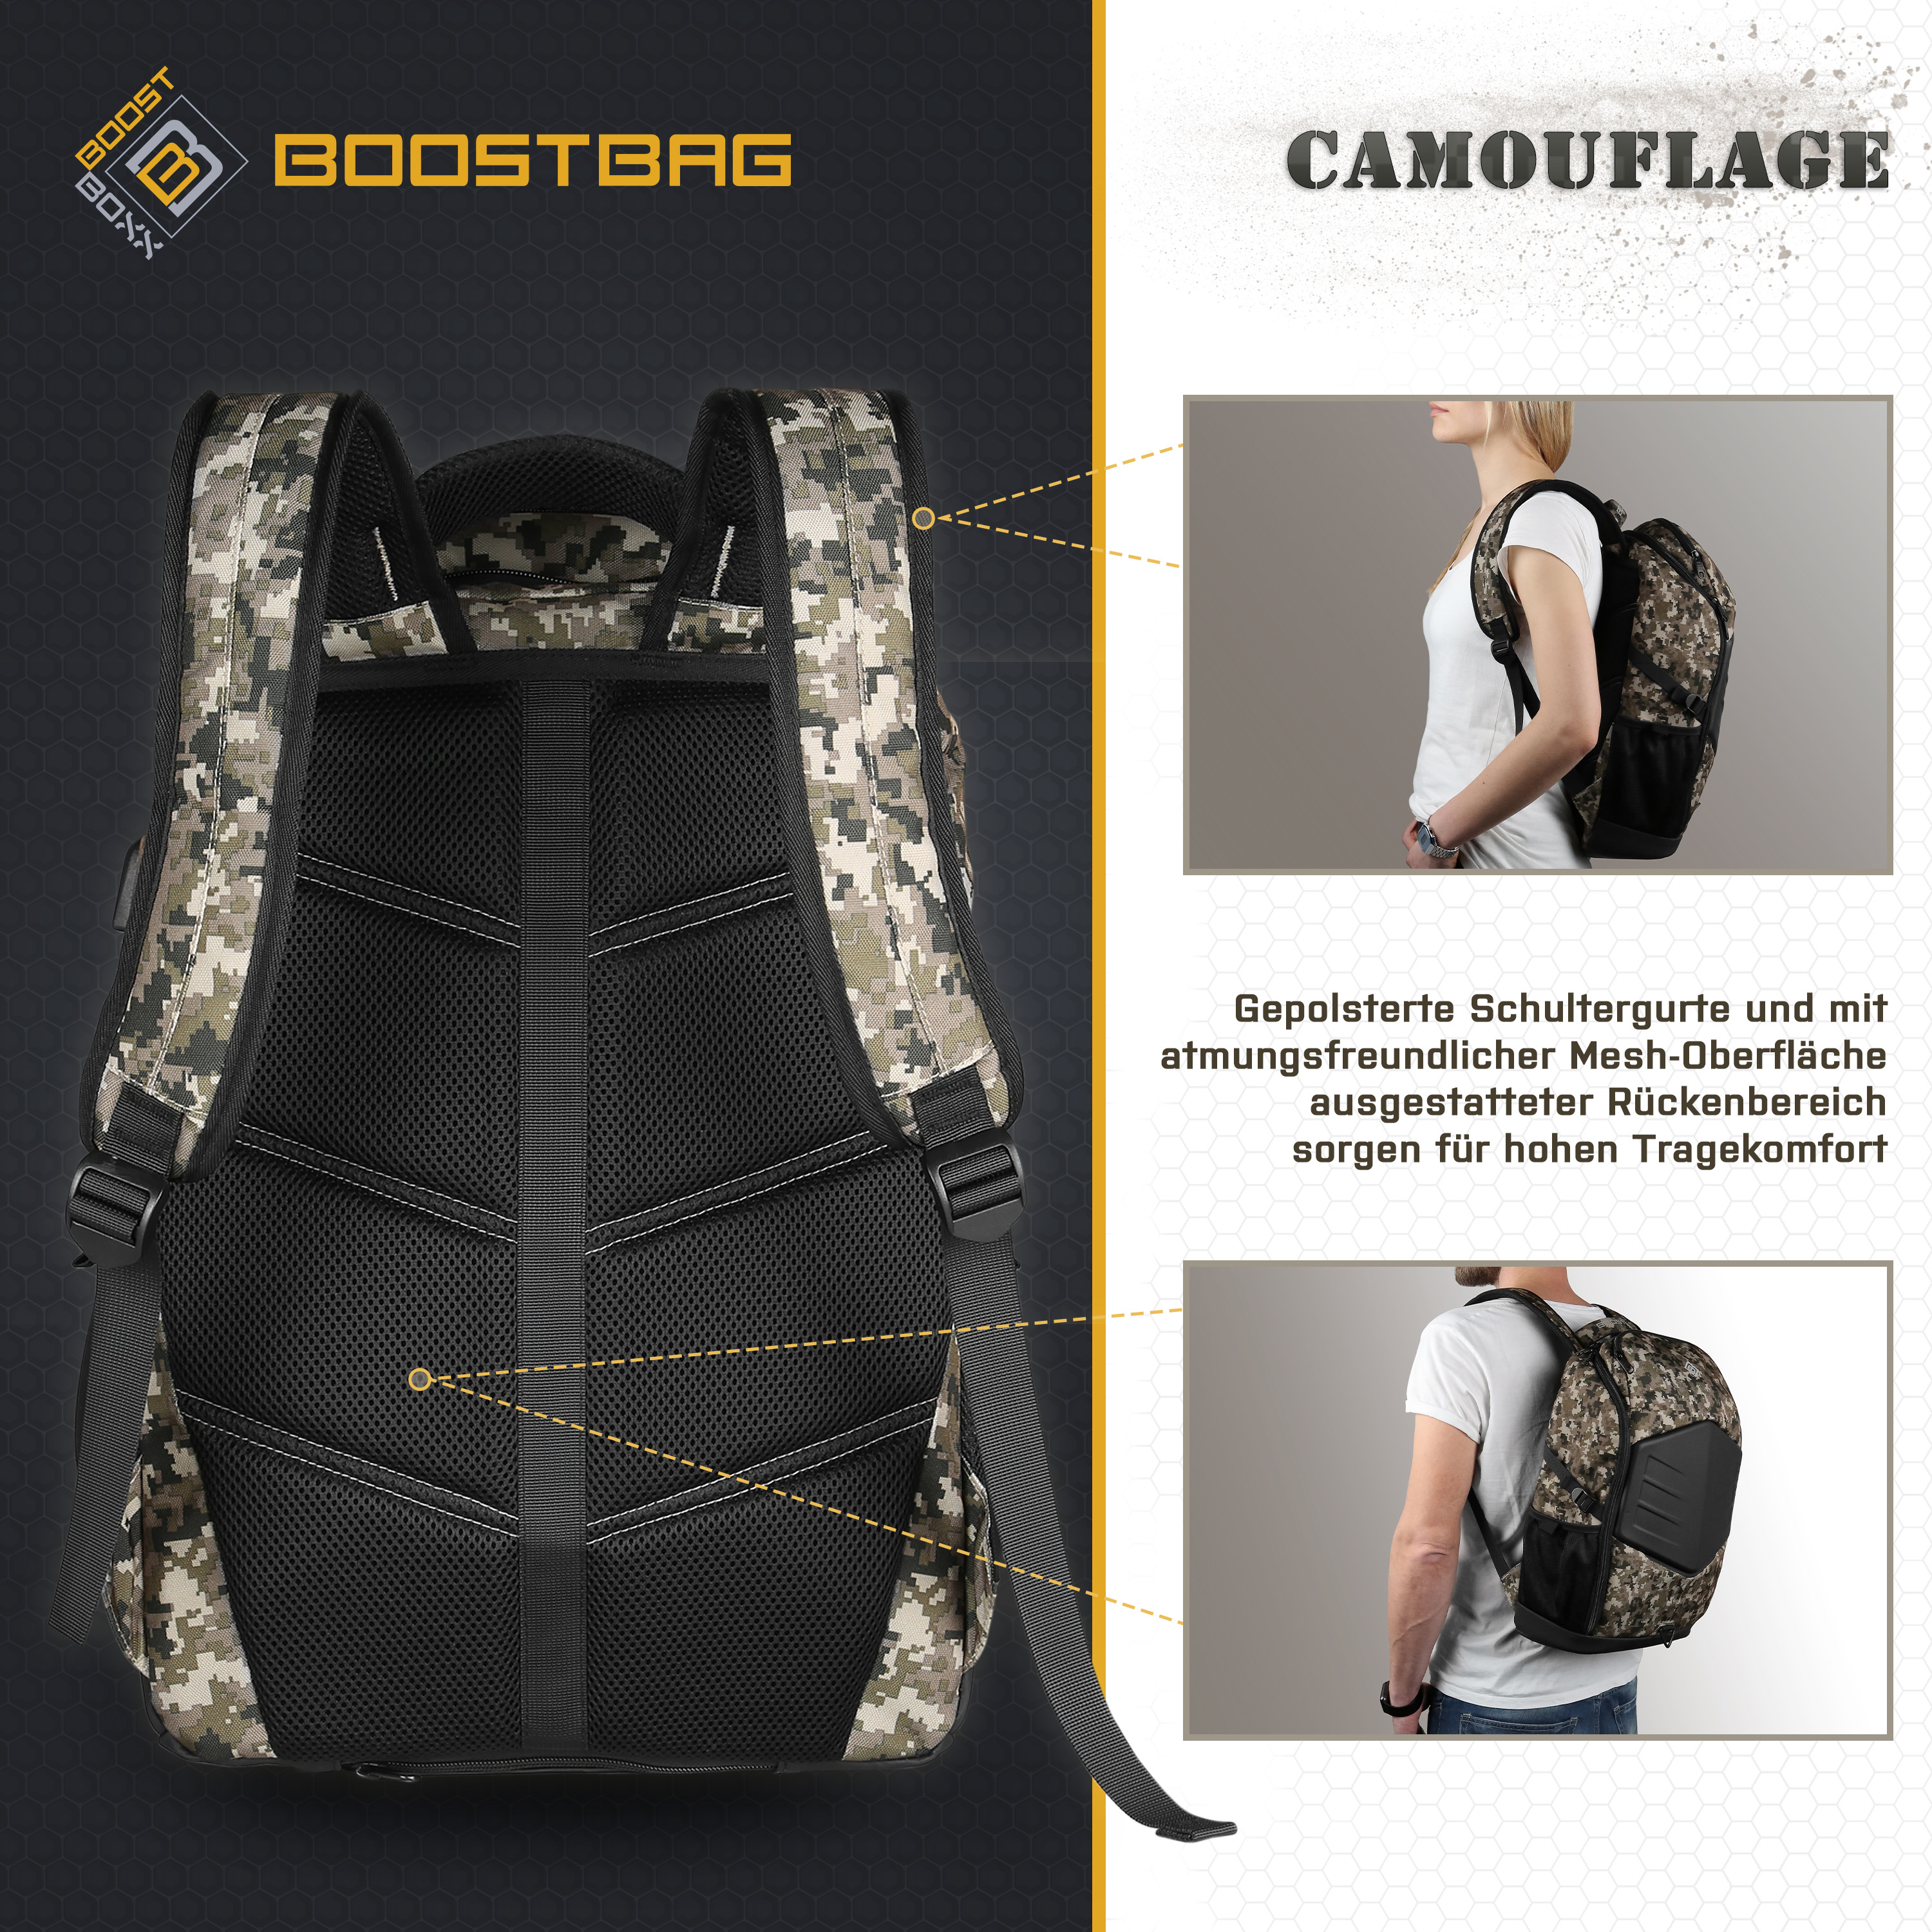 BOOSTBOXX BoostBag Camouflage army Rucksack Materialmix, Notebook-Rucksack Universal für